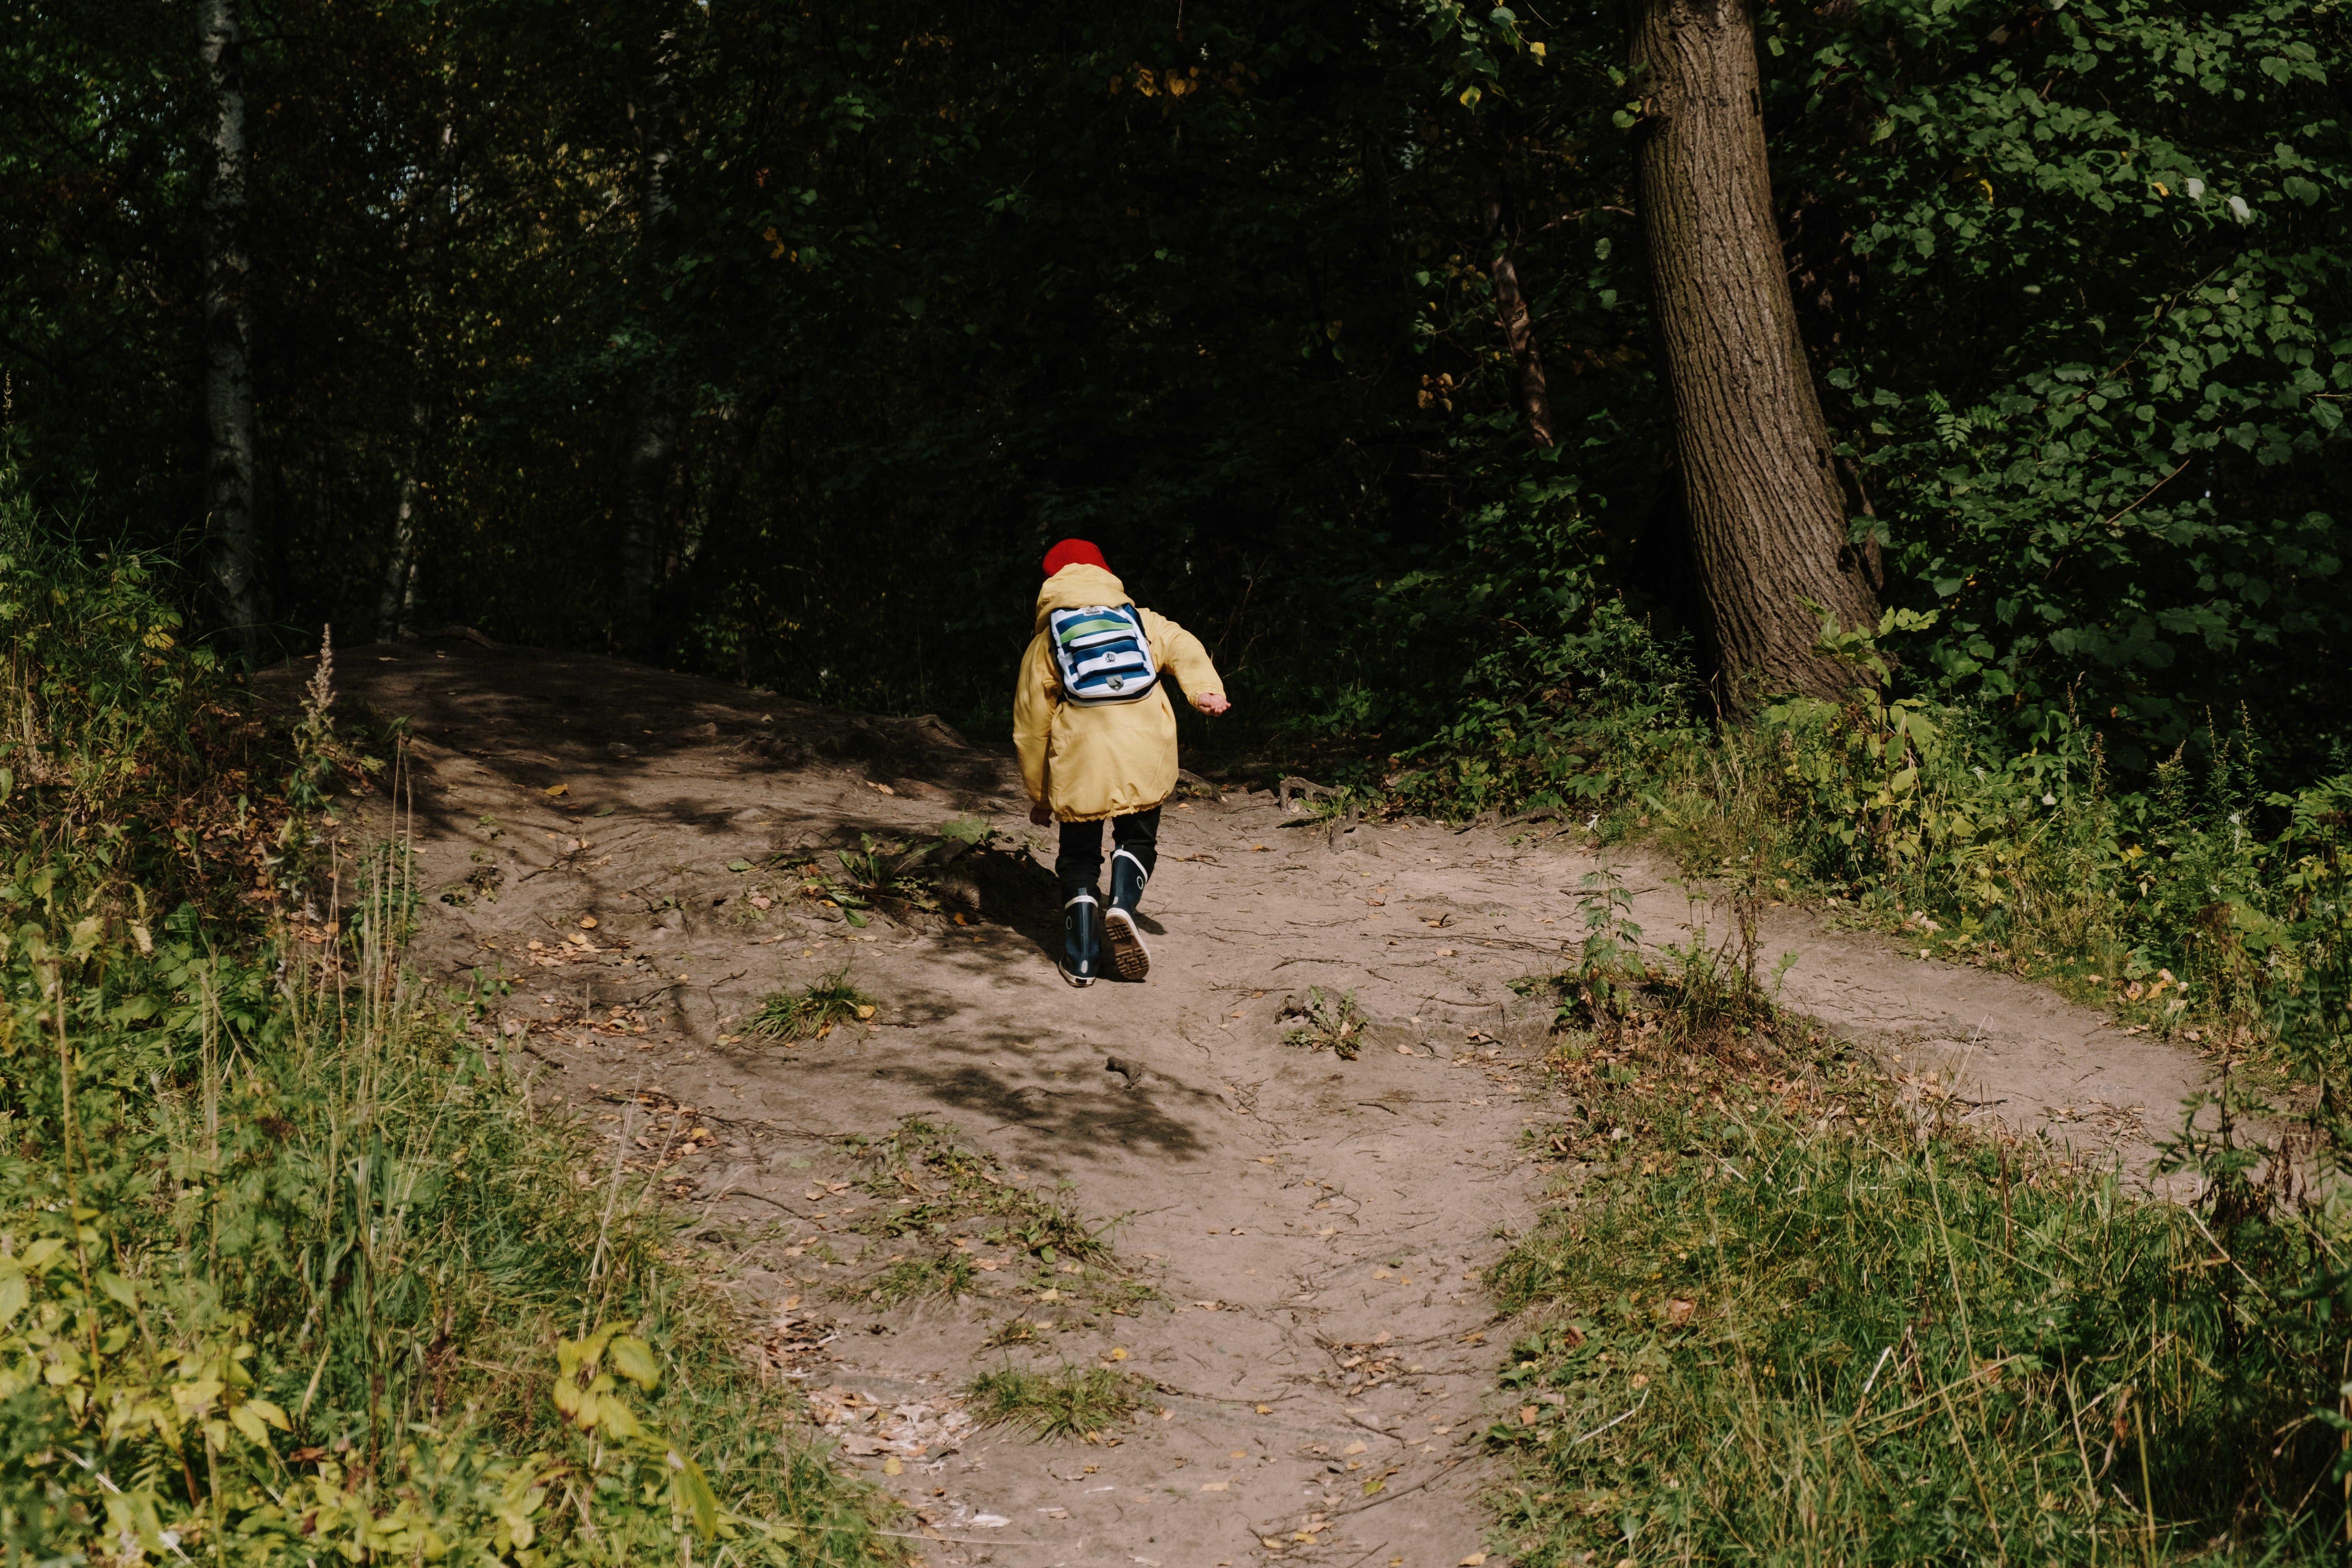 Nachdem er Mike gesehen hatte, rannte der kleine Junge in den Wald und verschwand. | Quelle: Pexels